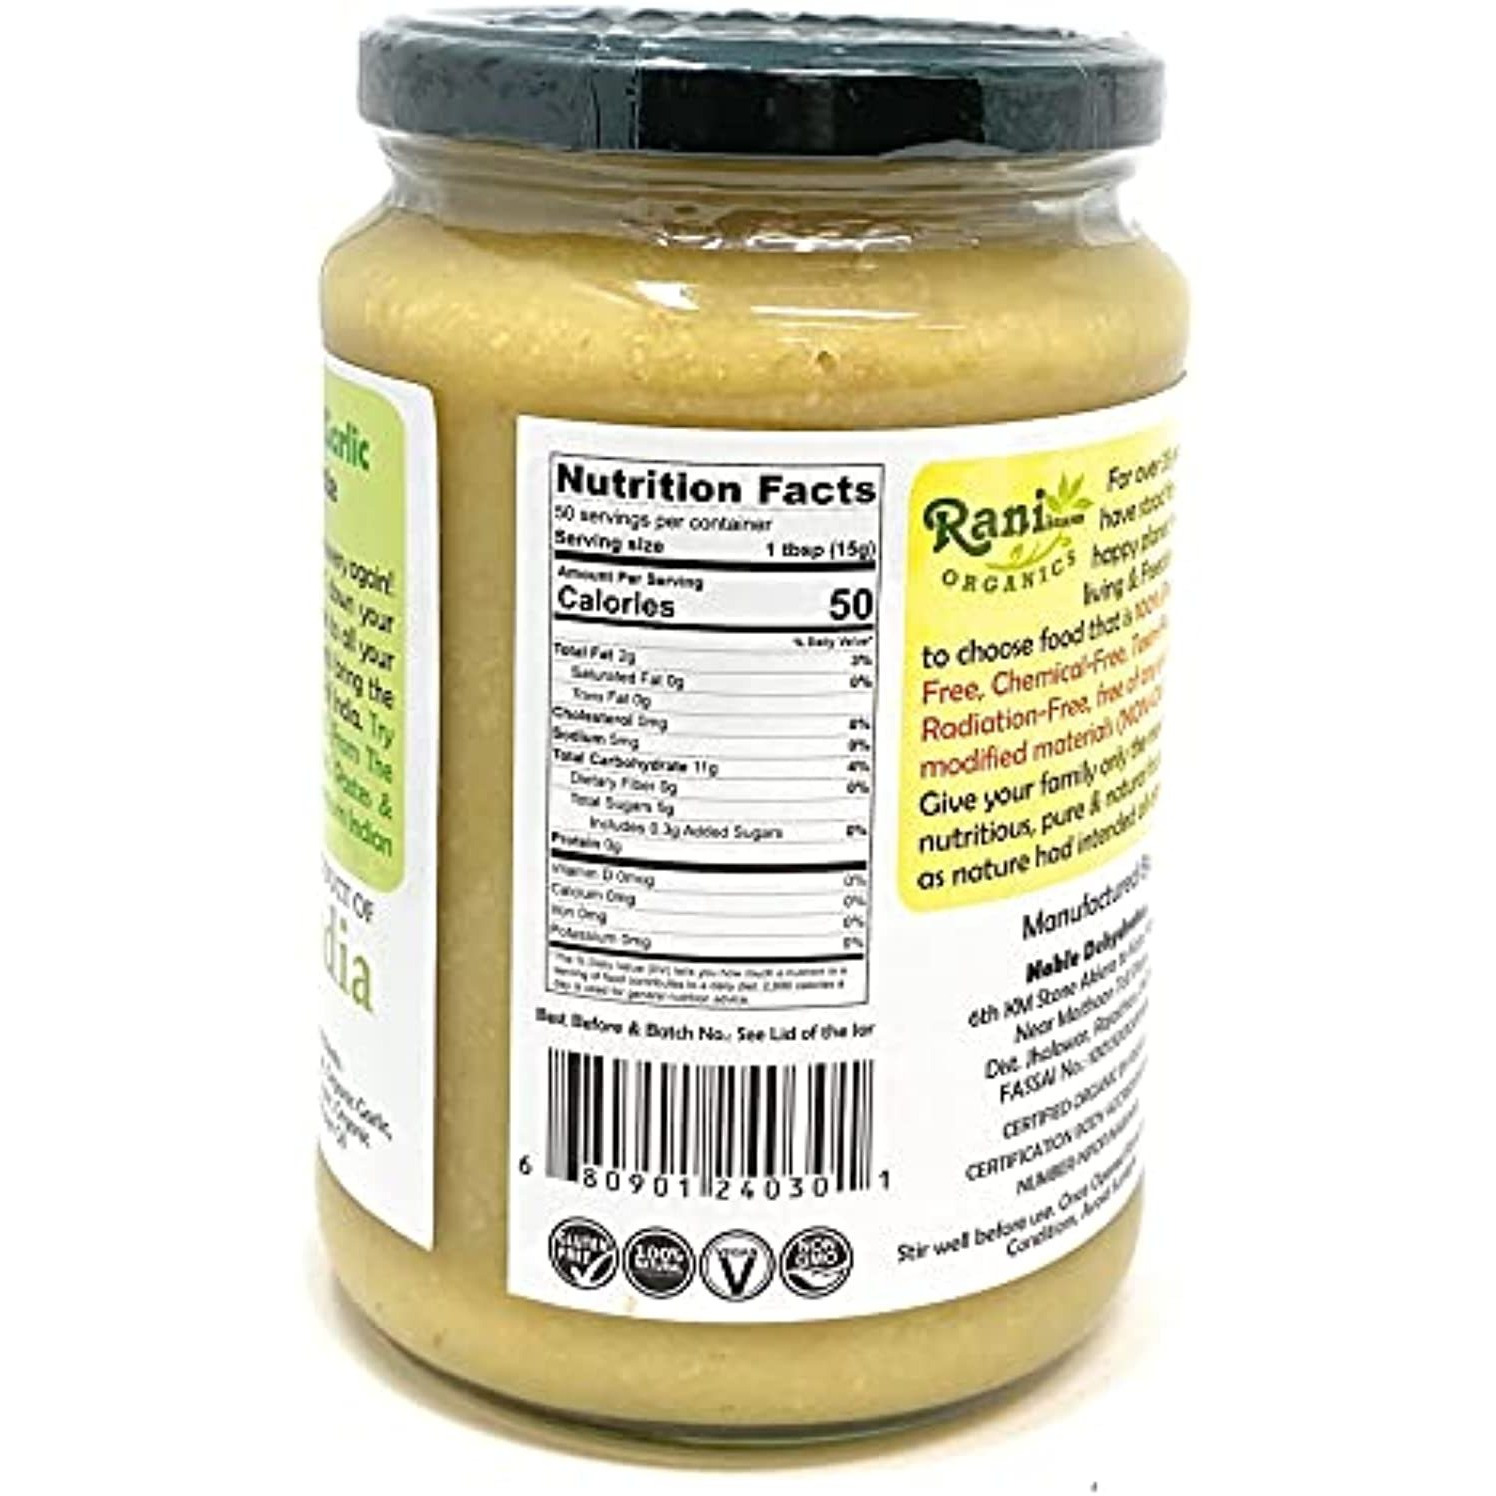 Rani Organic Ginger-Garlic Cooking Paste 26.5oz (750g) ~ Vegan | Glass Jar | Gluten Free | NON-GMO | No Colors | Indian Origin | USDA Certified Organic